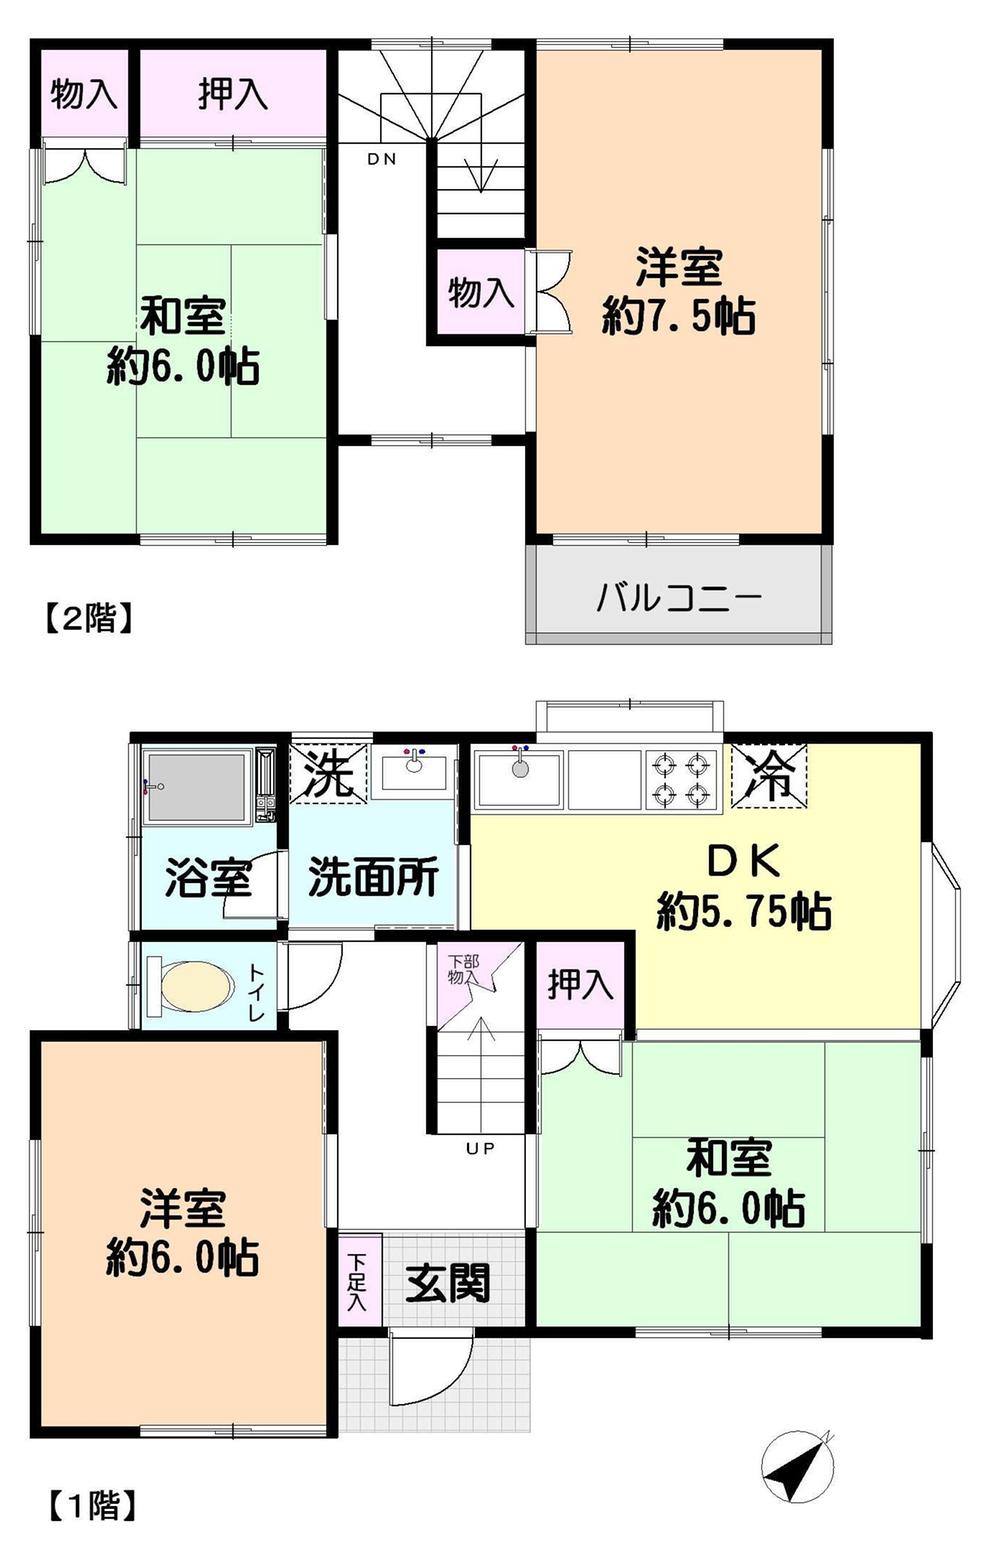 Floor plan. 12.8 million yen, 4DK, Land area 109.19 sq m , Building area 76.17 sq m